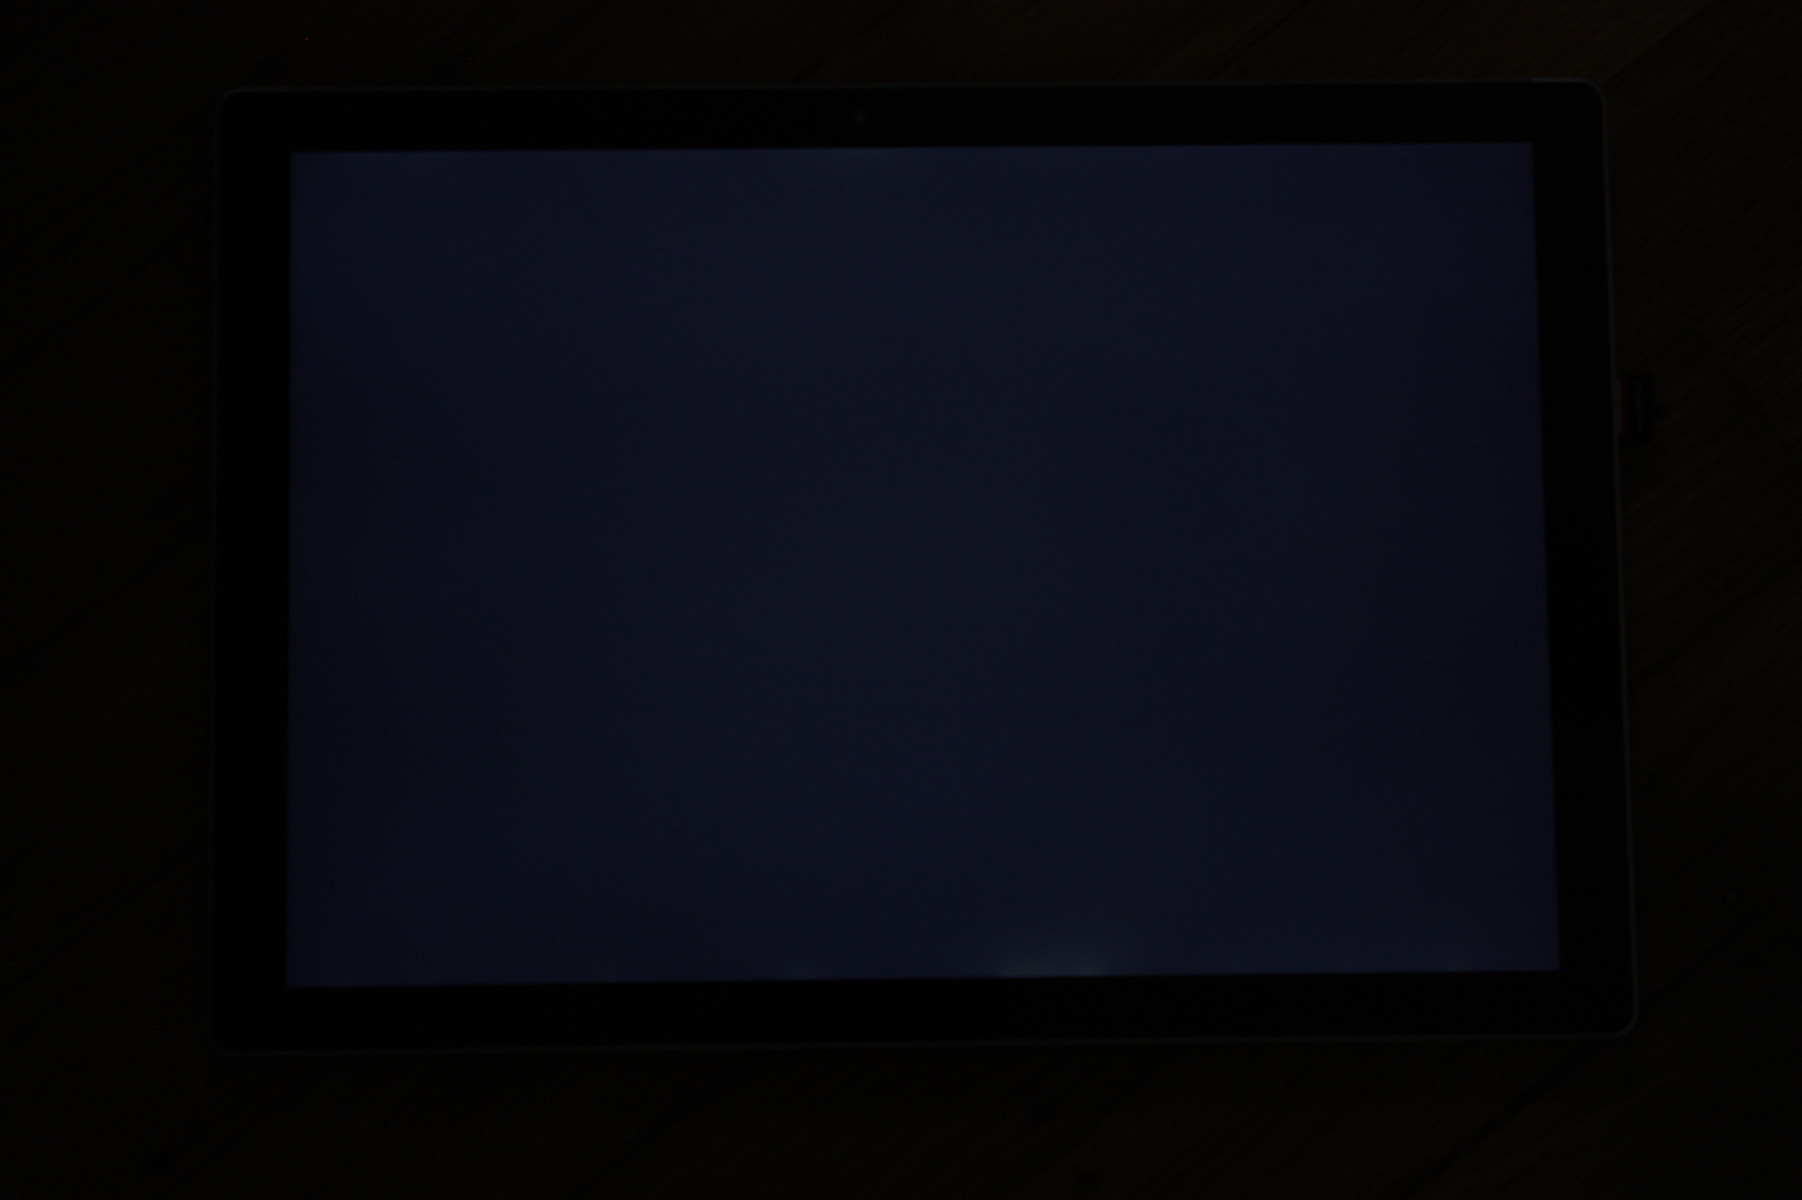 Rx черный экран. Черный экран монитора. Черный монитор. Телевизор черный экран. Экран выключенного монитора.